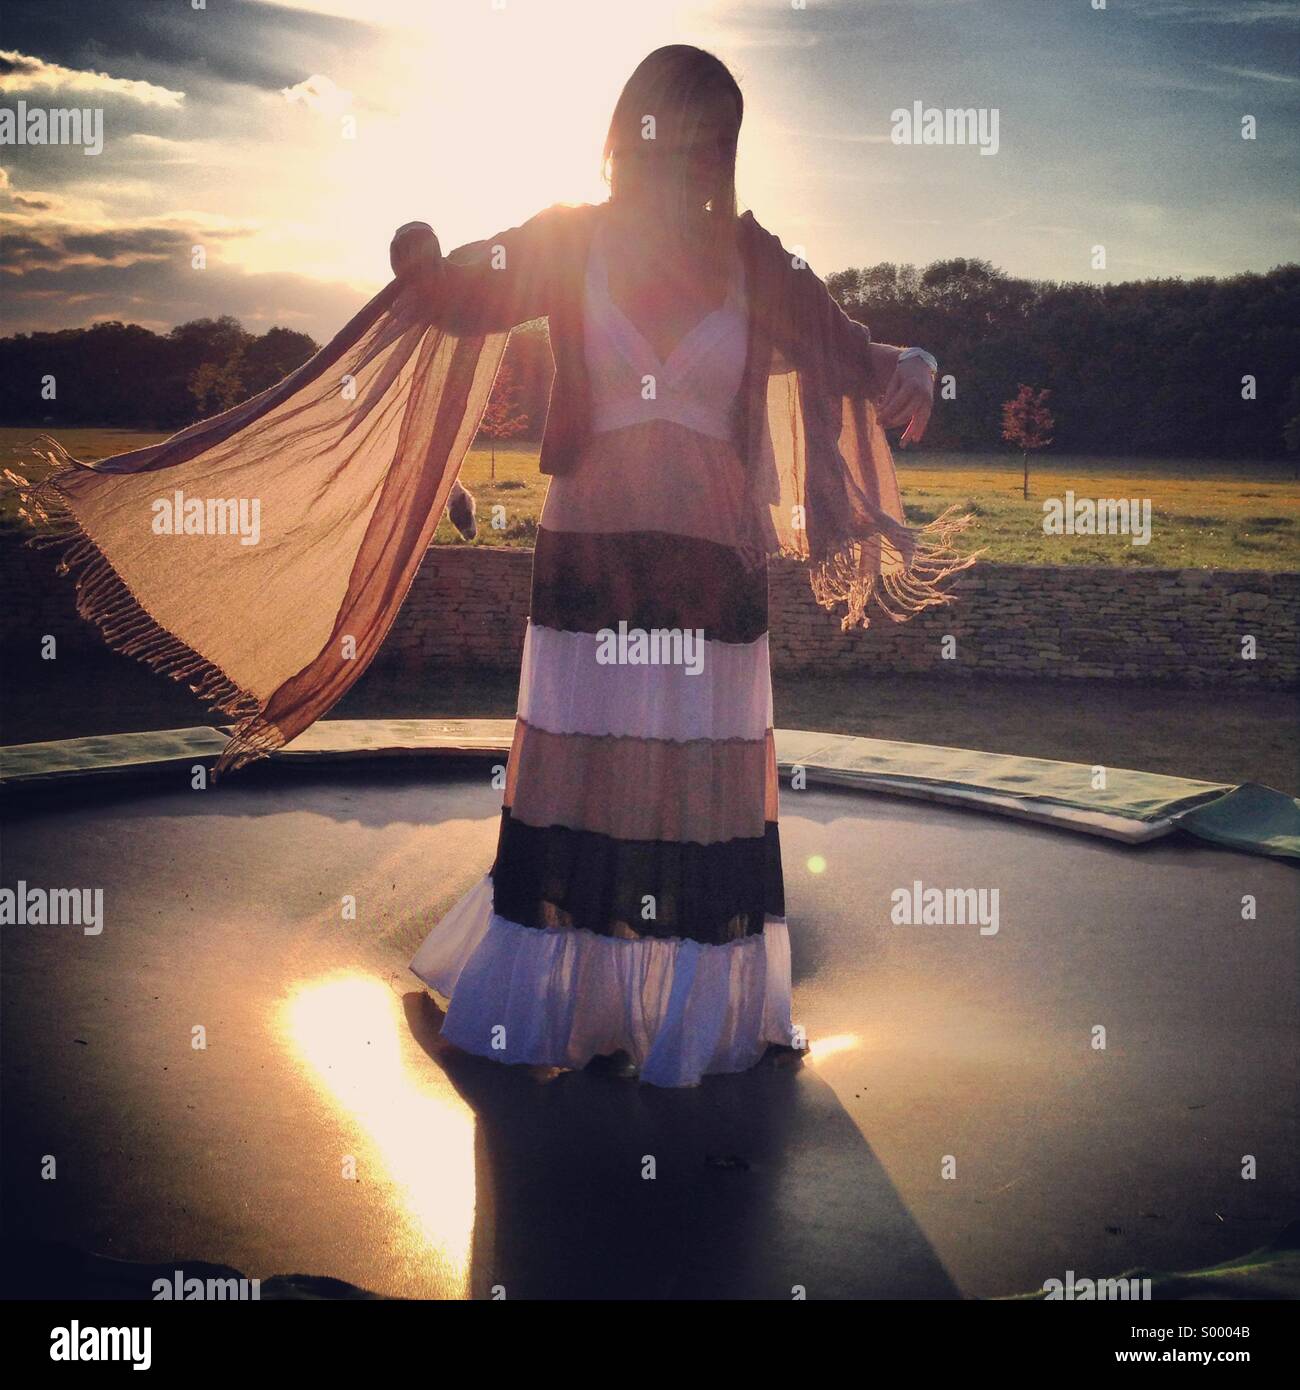 Une jeune femme en robe flottant rebondit sur un trampoline au coucher du soleil. Banque D'Images